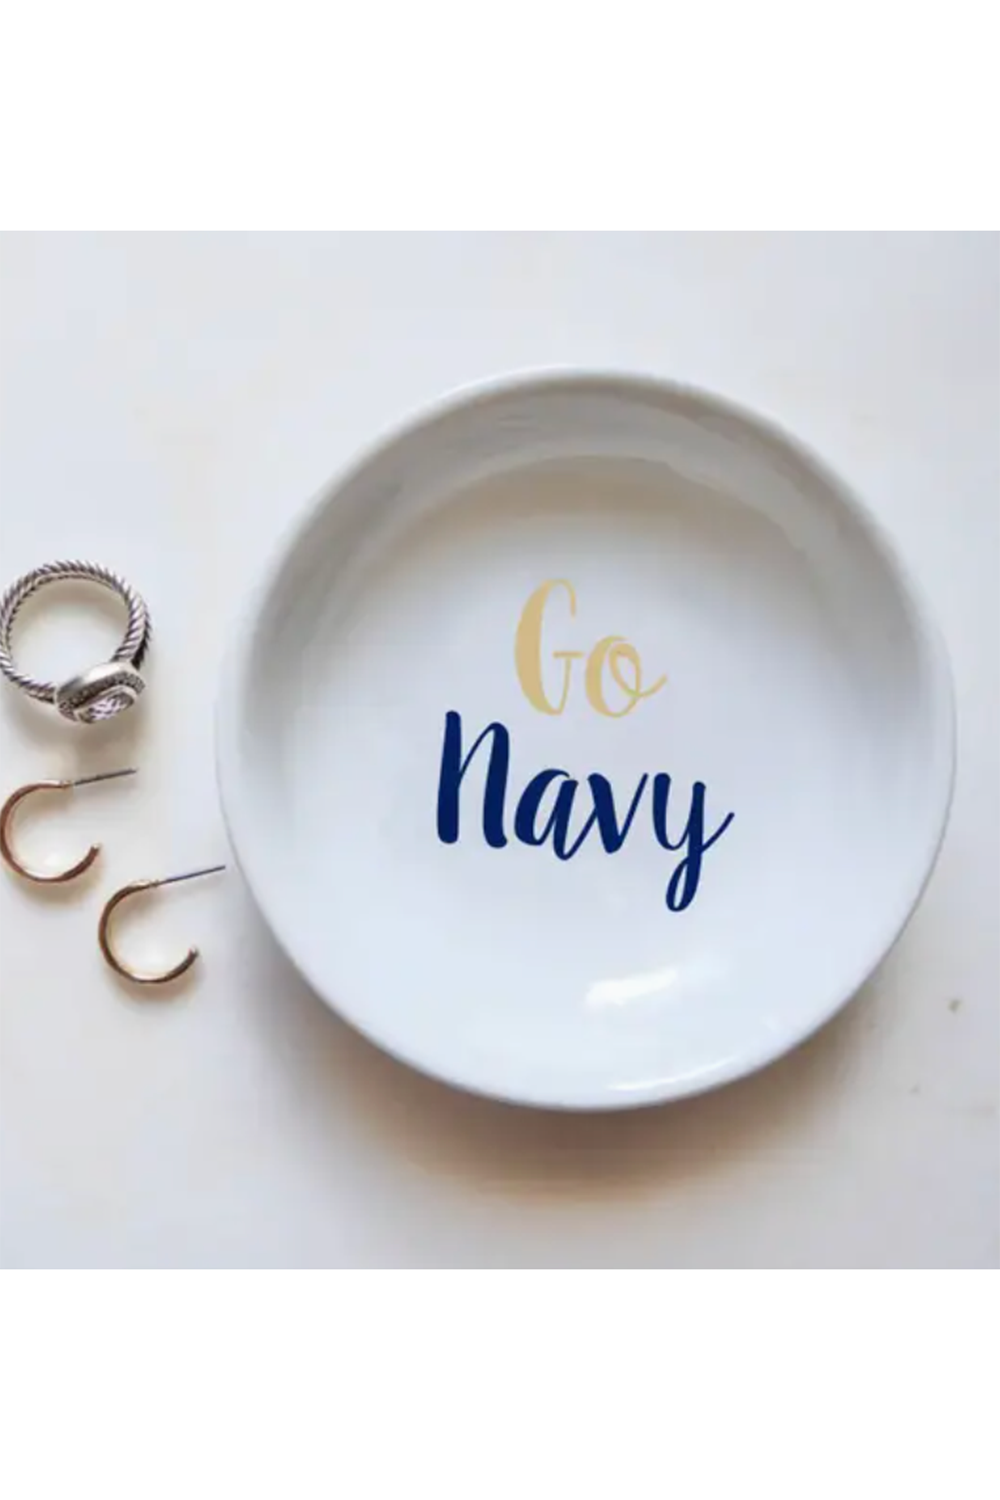 Go Navy Ring Dish